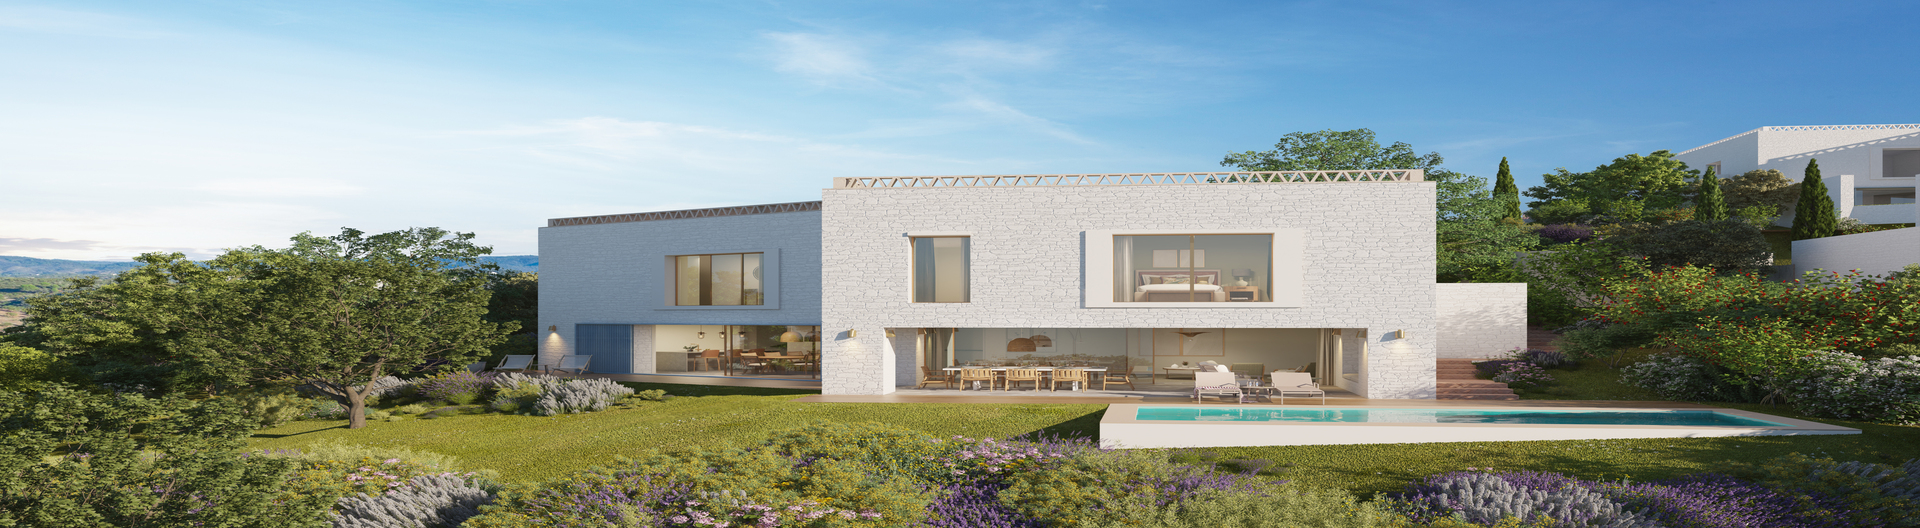 Exclusive Villa in Algarve